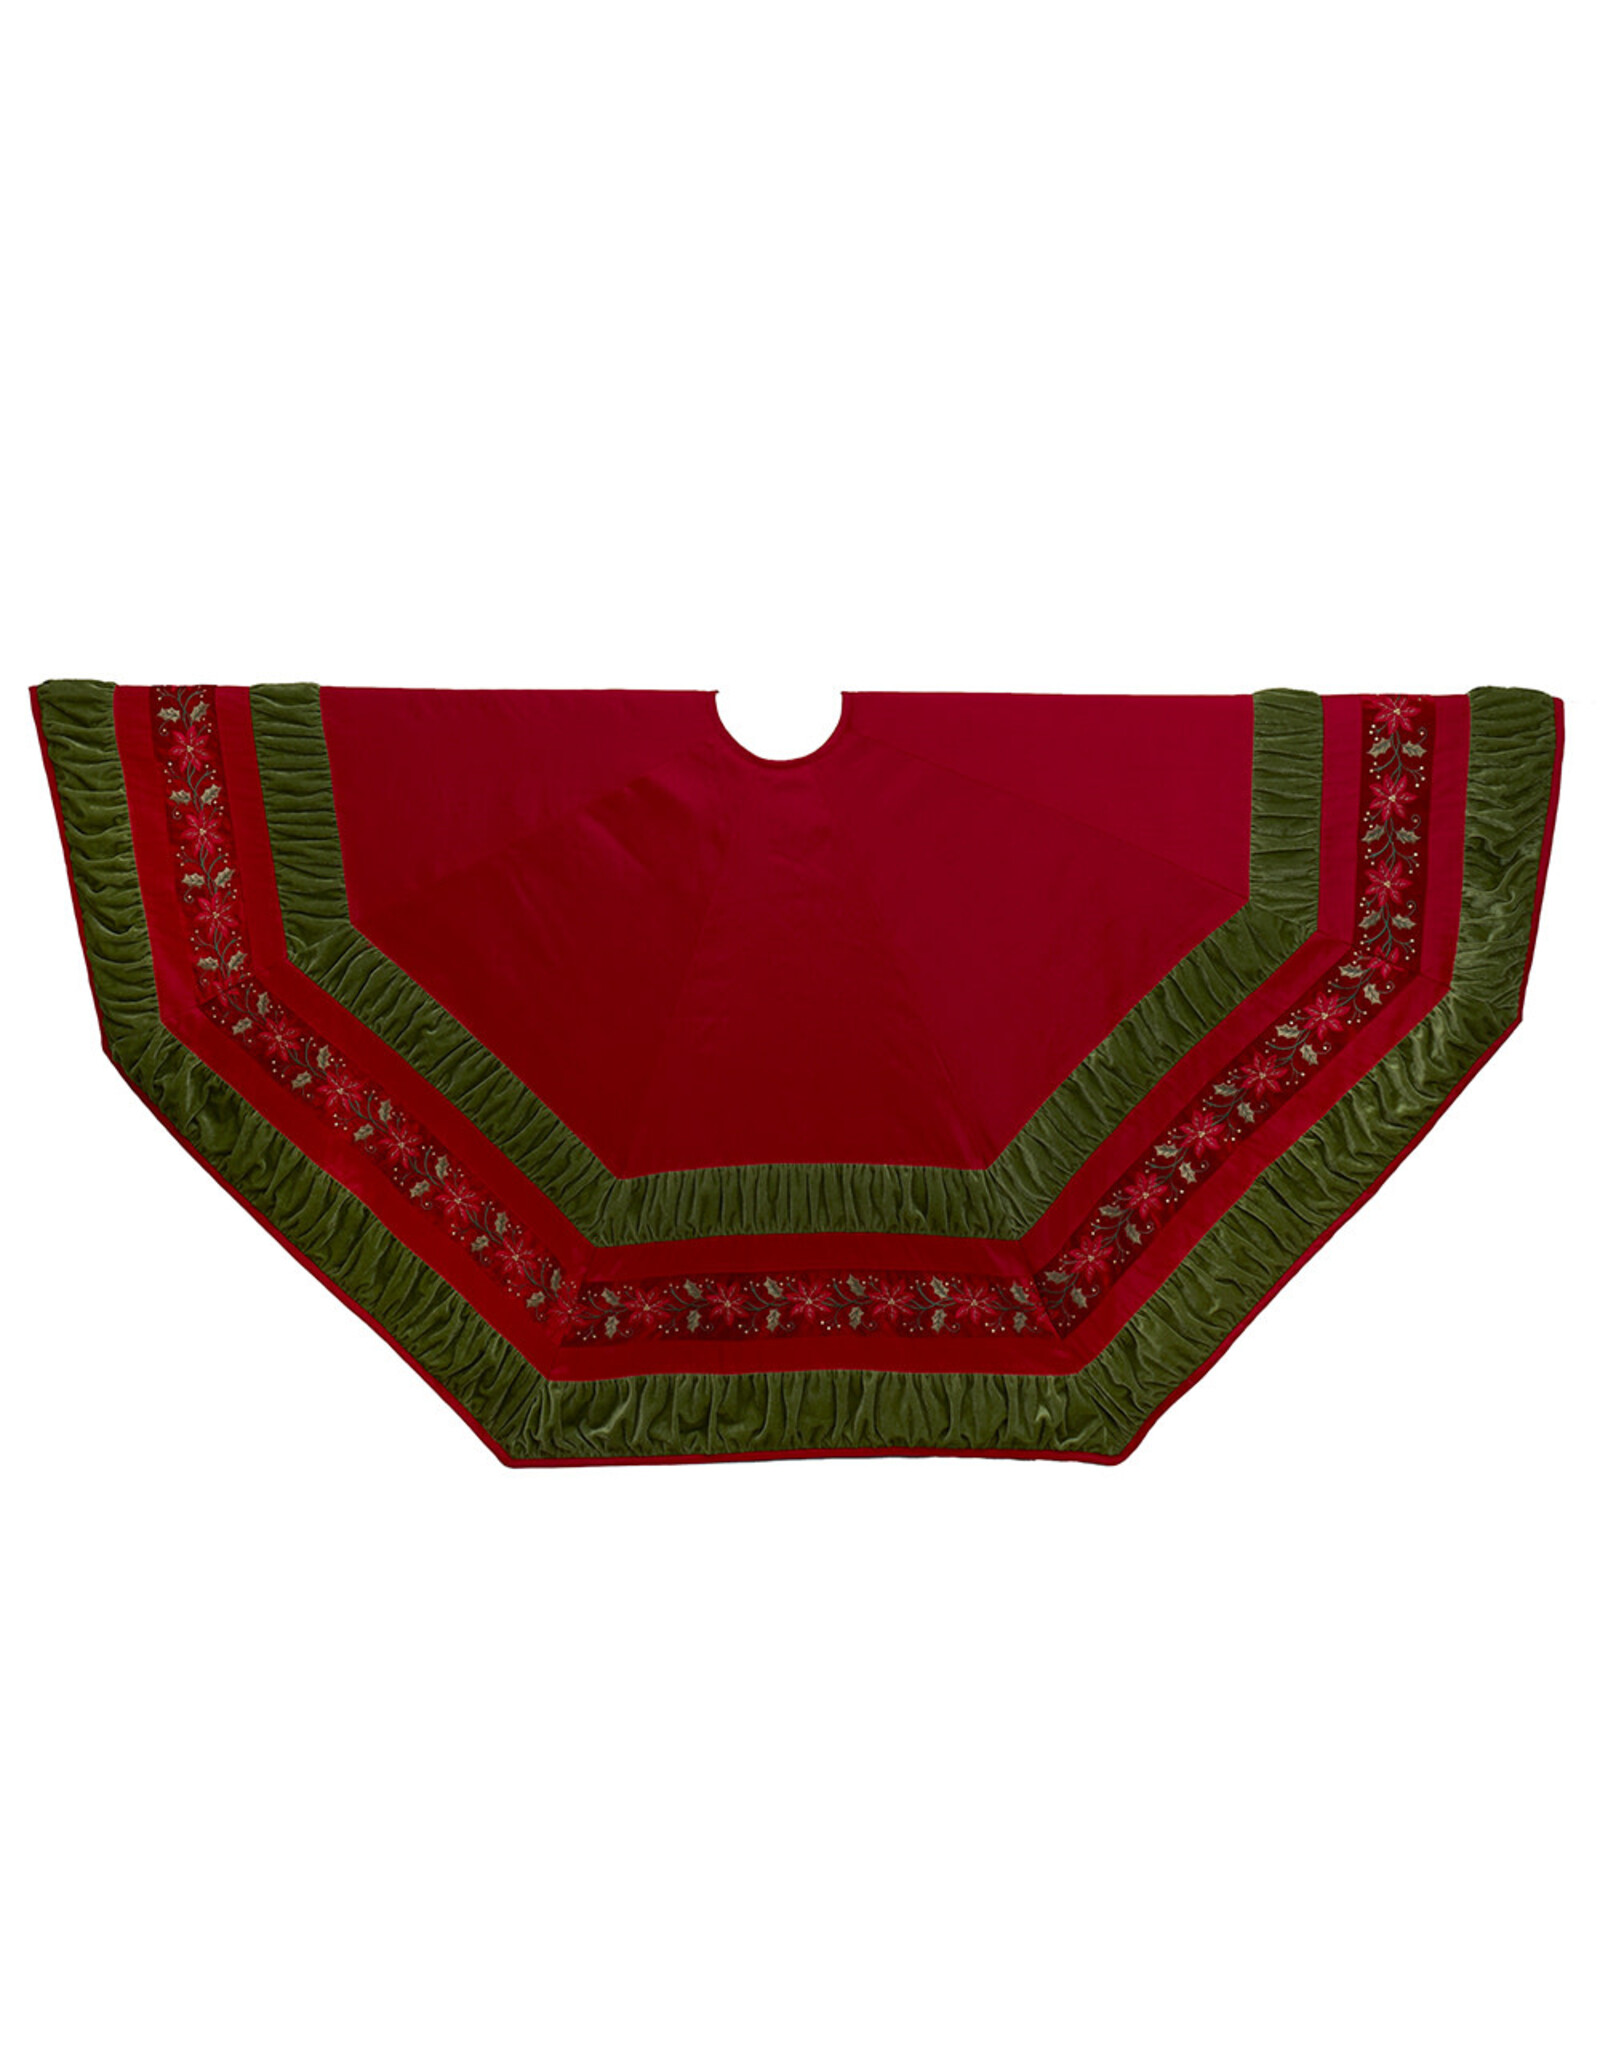 Kurt Adler Christmas Tree Skirts 72” Red w Green Border Tree Skirt